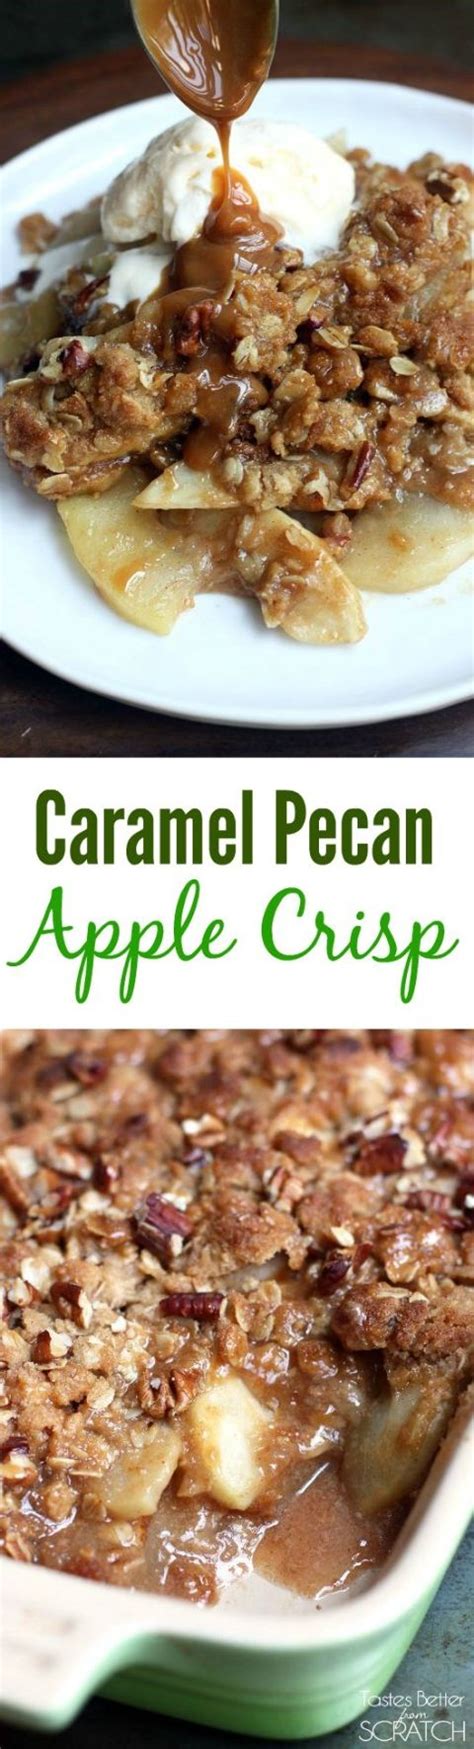 Caramel Pecan Apple Crisp Recipe Apple Crisp Recipes